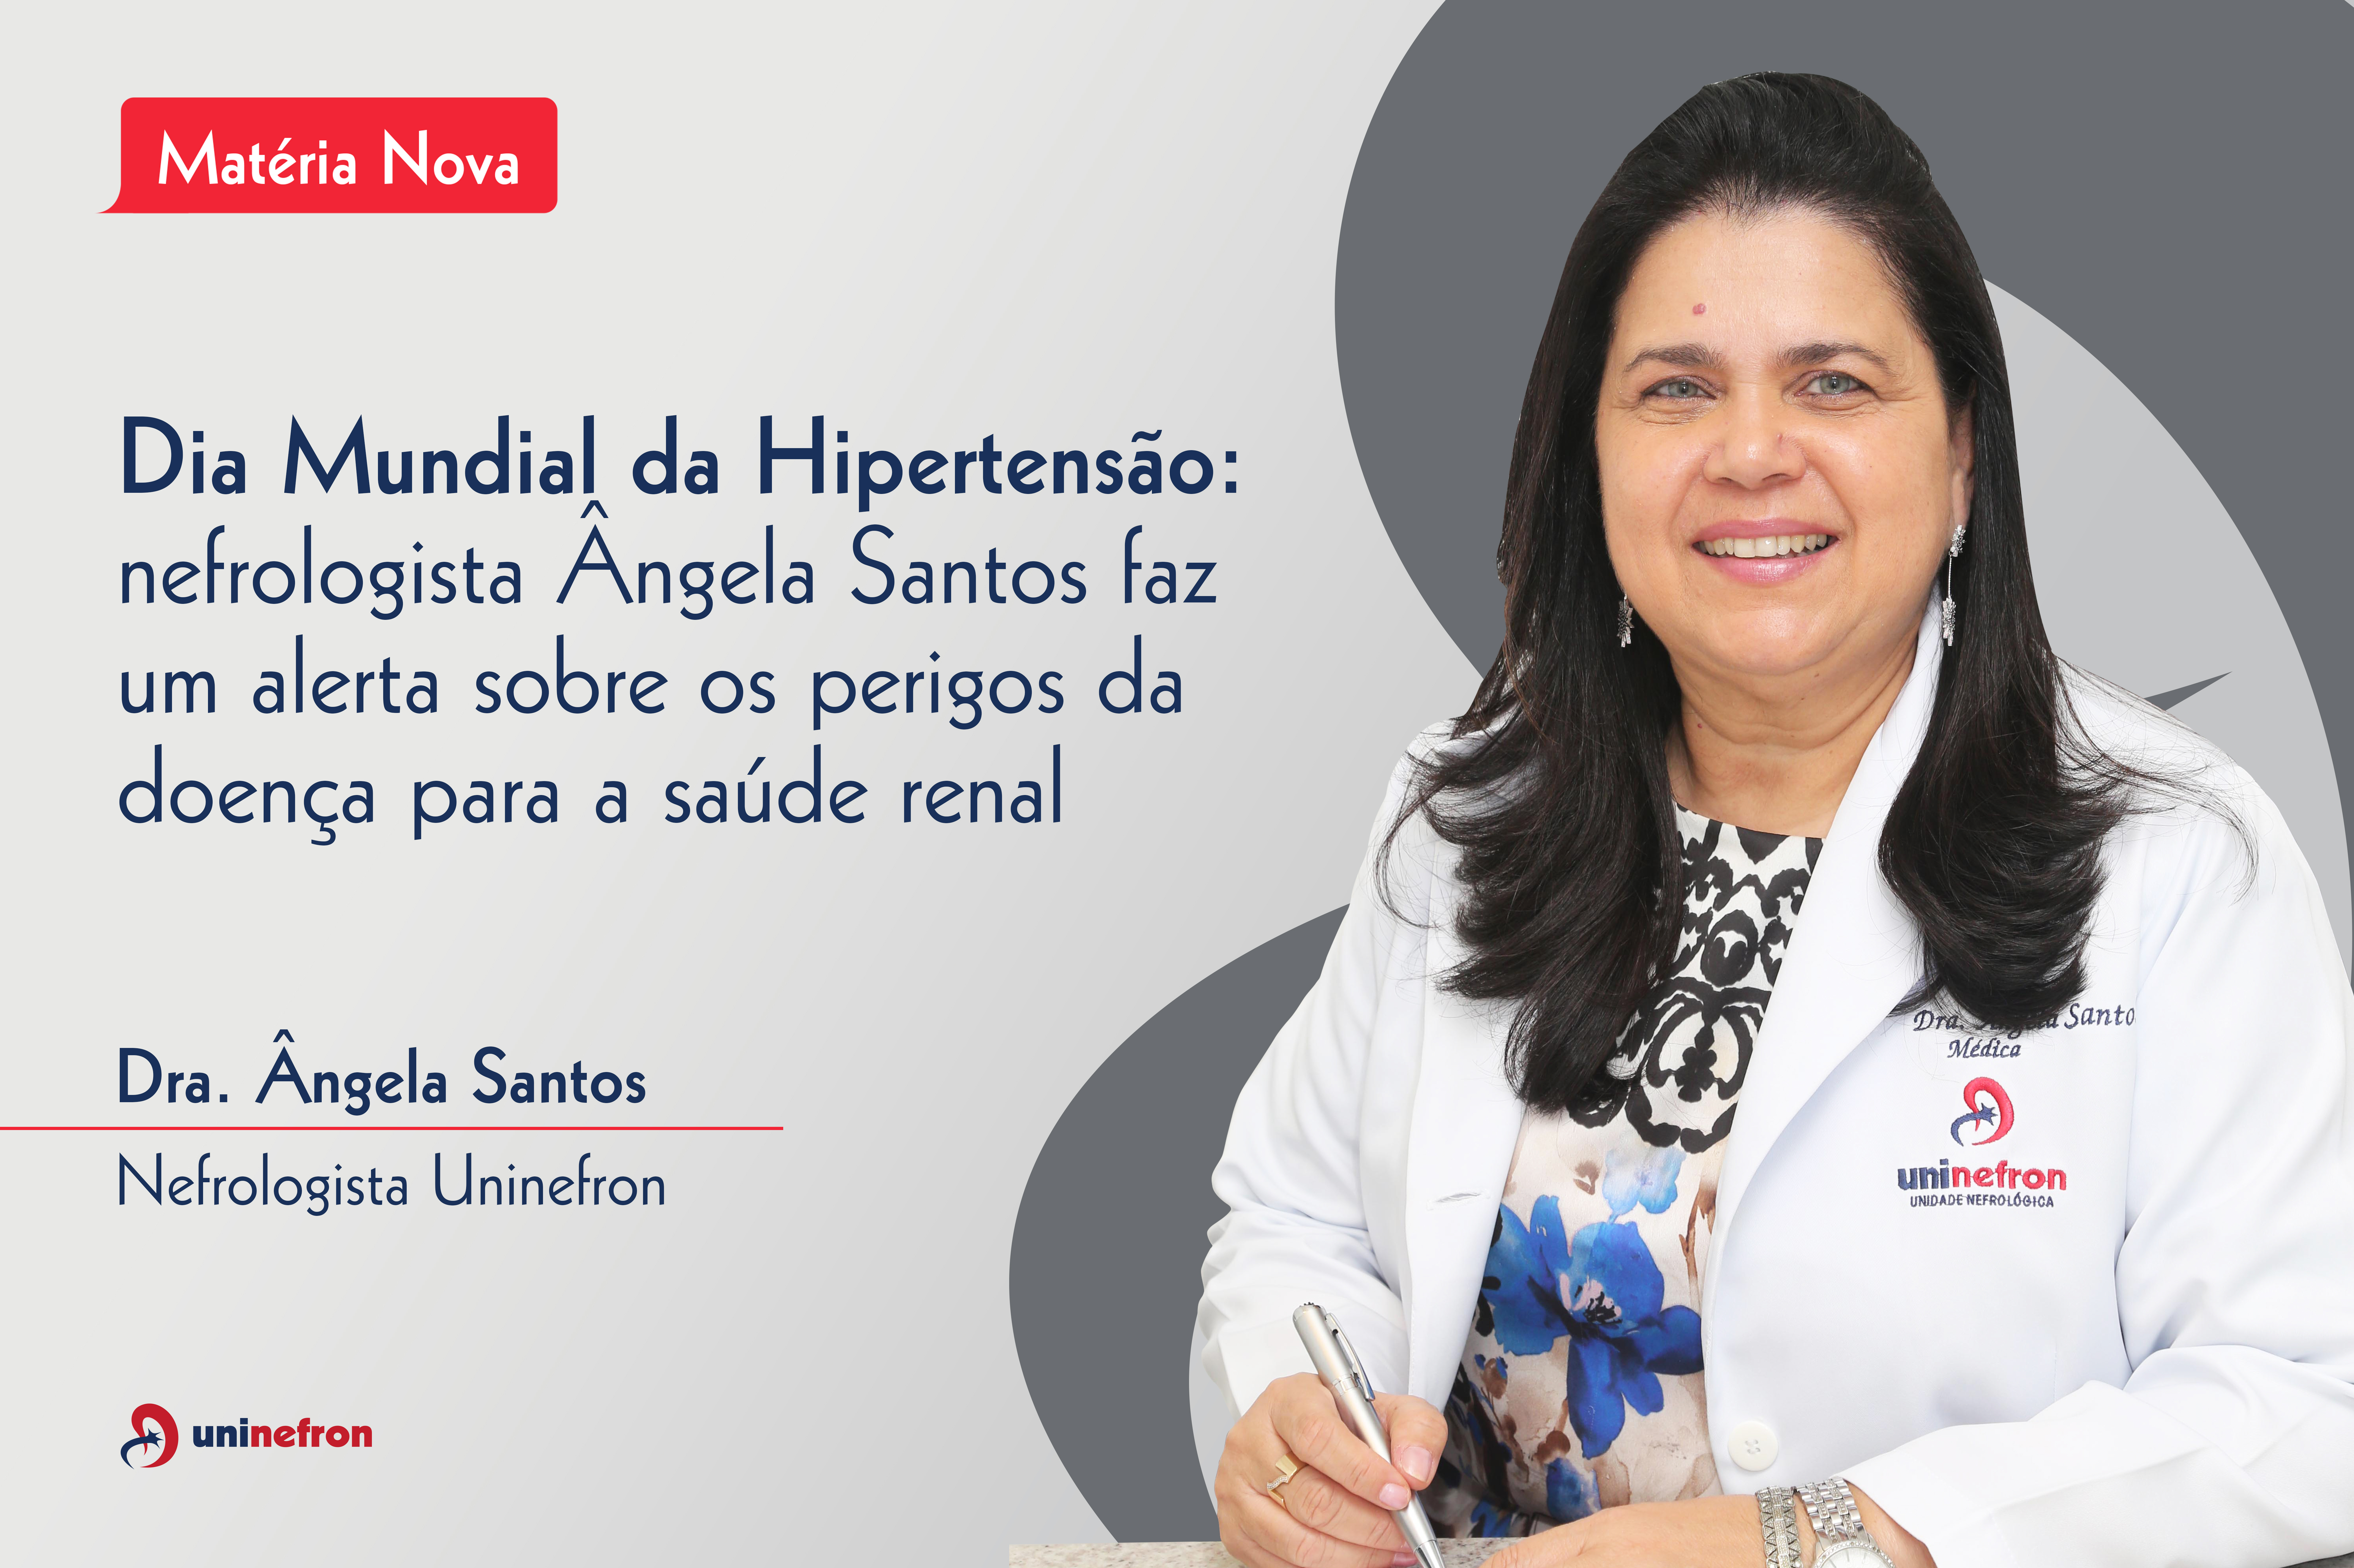 Dia Mundial da Hipertensão: nefrologista Ângela Santos faz um alerta sobre os perigos da doença para a saúde renal